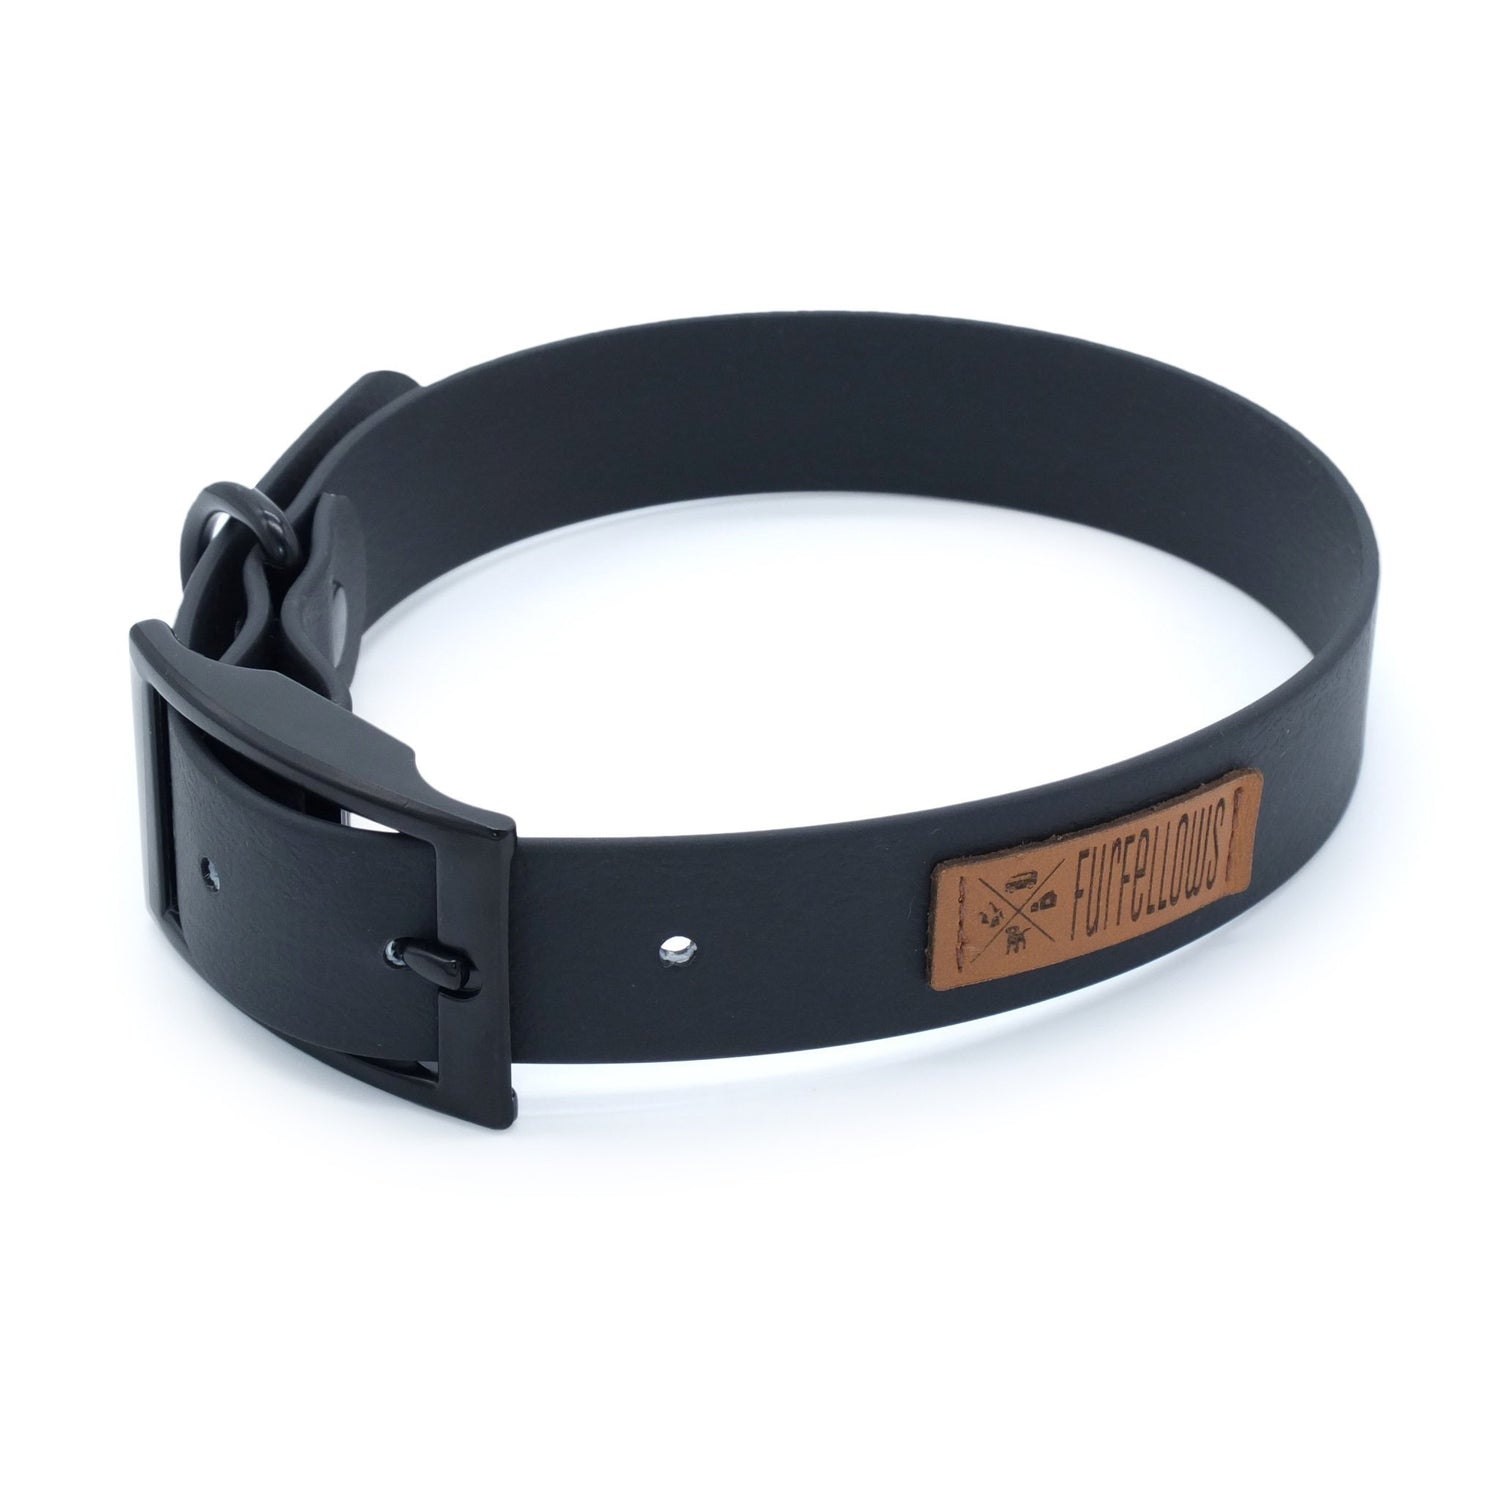 Furfellows Biothane Hundehalsband in schwarz mit schwarzer Schnalle. Handgemachte Hundeaccessoires, Hundeleinen & Halsbänder für Hunde aus Biothane